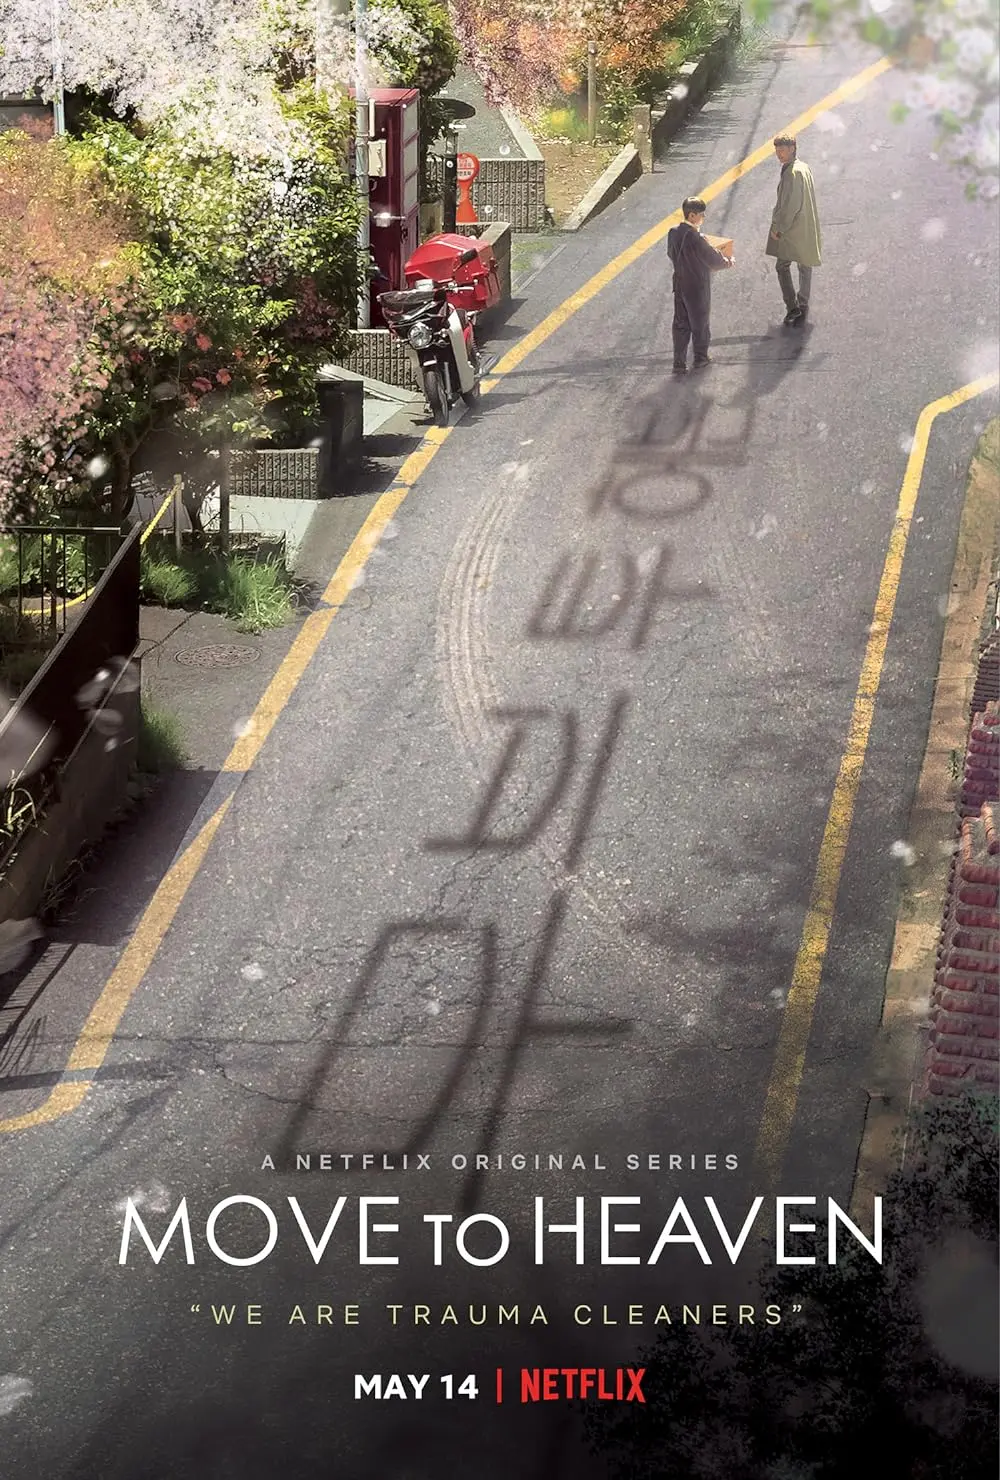 mudanzas al cielo imdb - Will there be a season 2 of Move to Heaven